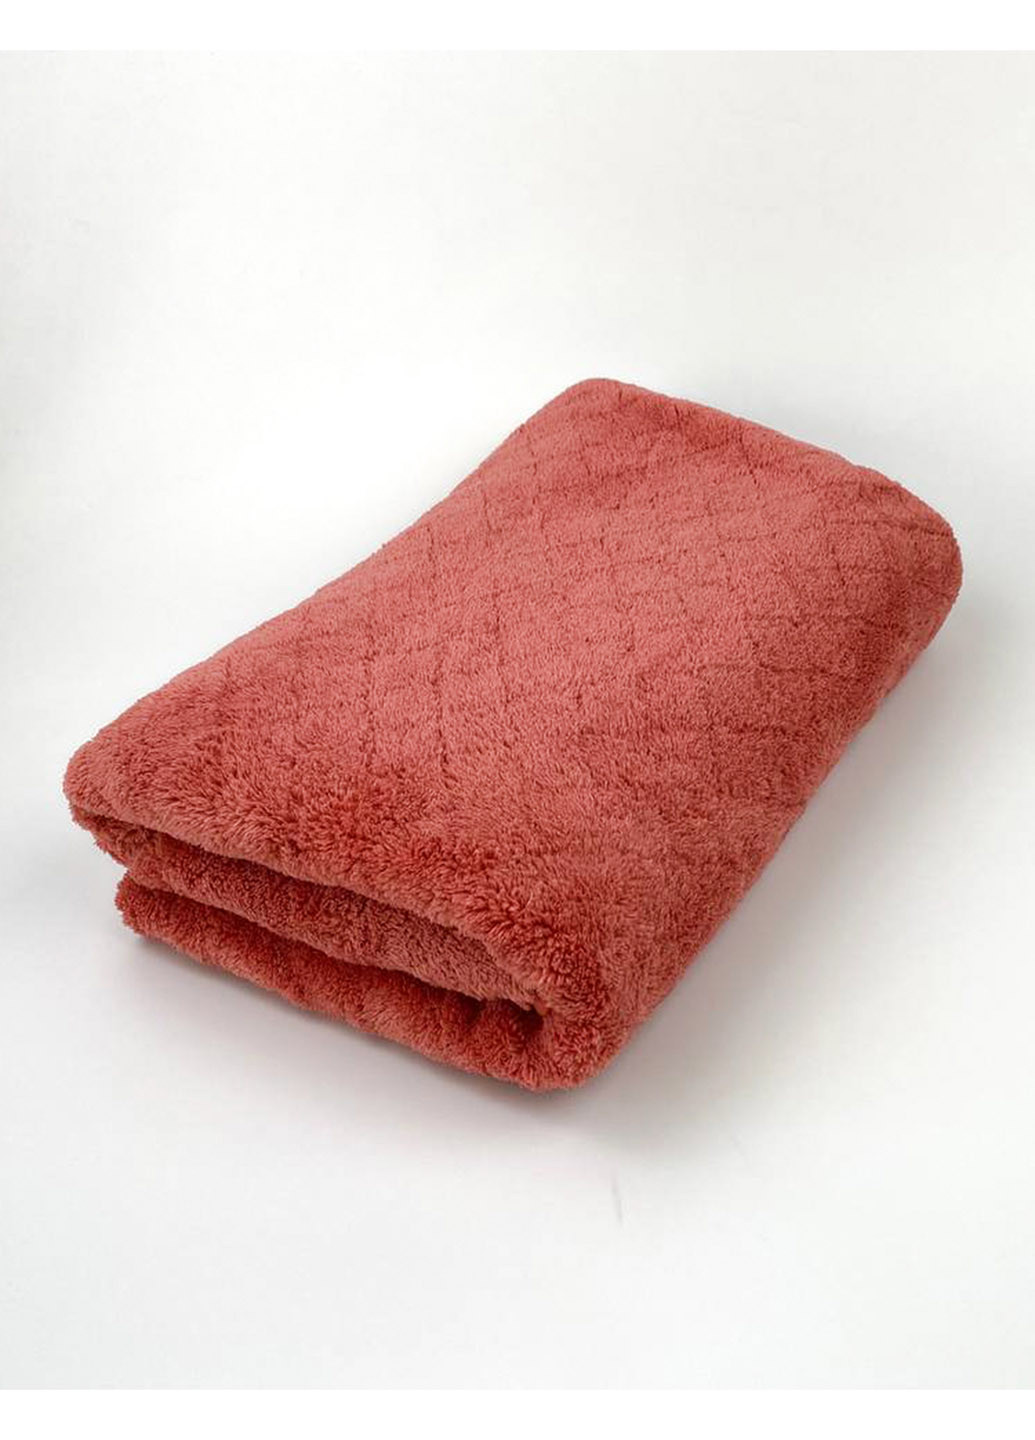 Homedec полотенце банное микрофибра 140х70 см однотонный красный производство - Турция